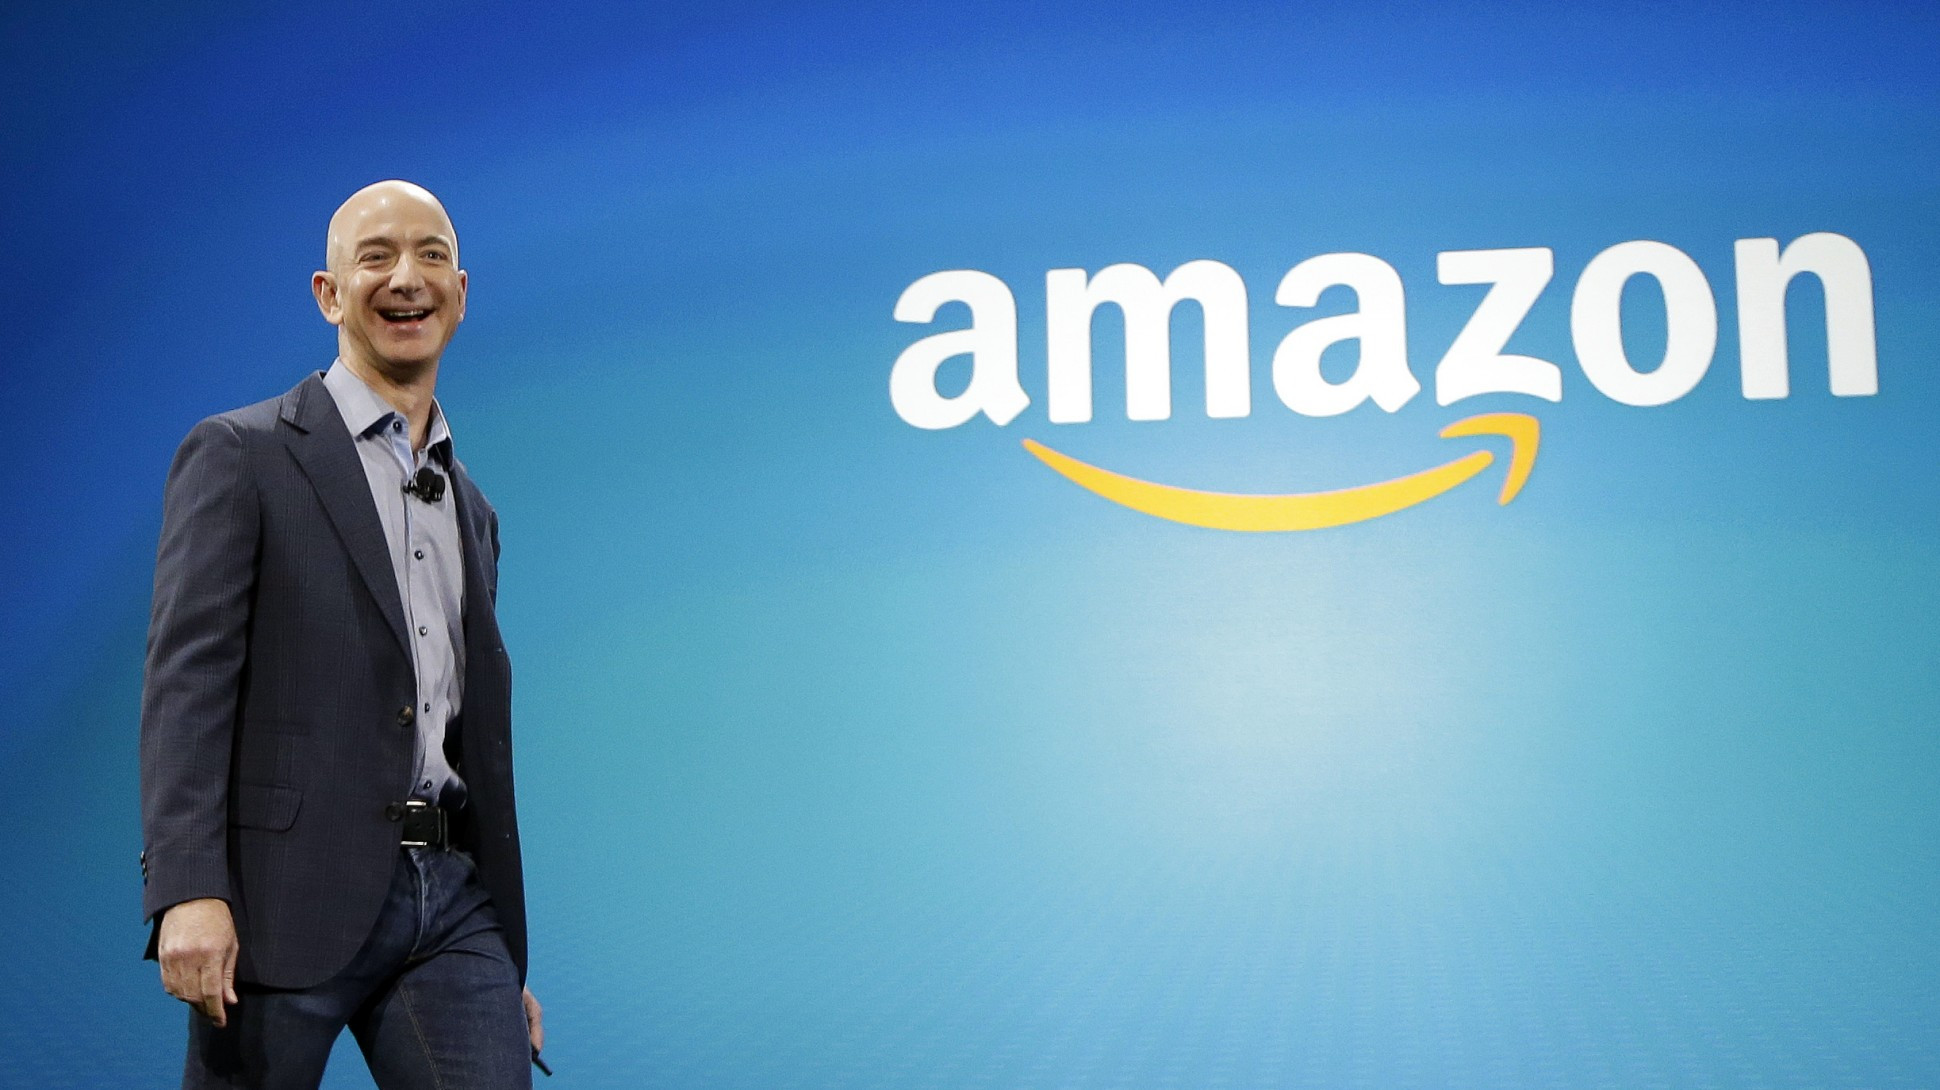 Bezos-Amazon-e1421161028363-1940x1090.jpg